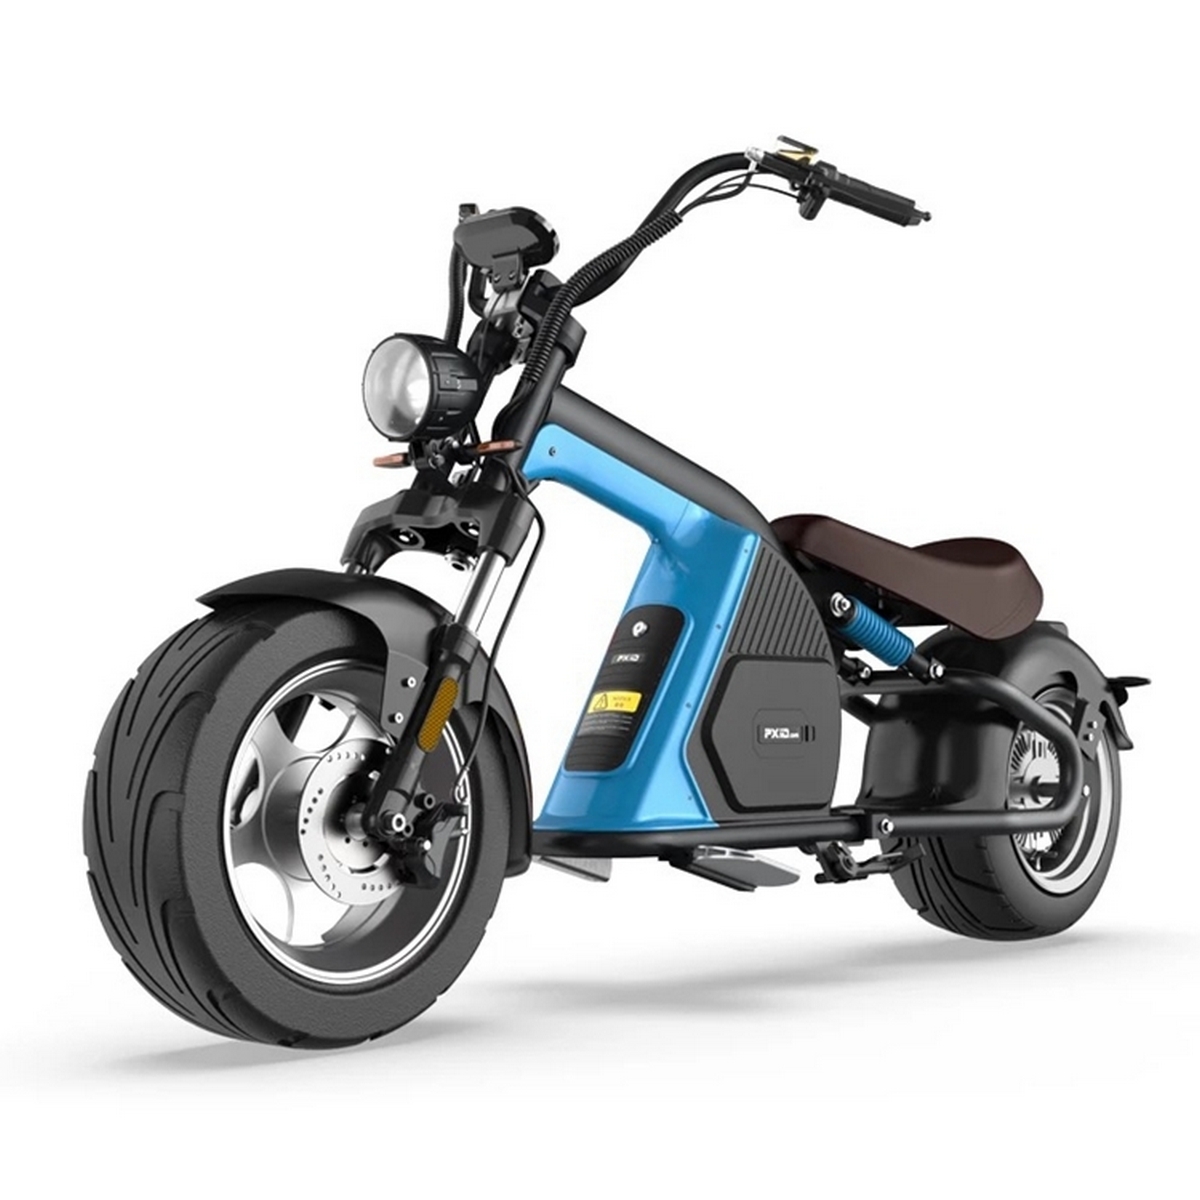 La commercialisation en France du scooter électrique EMoS Wyld n’est pas encore confirmée. © EMoS